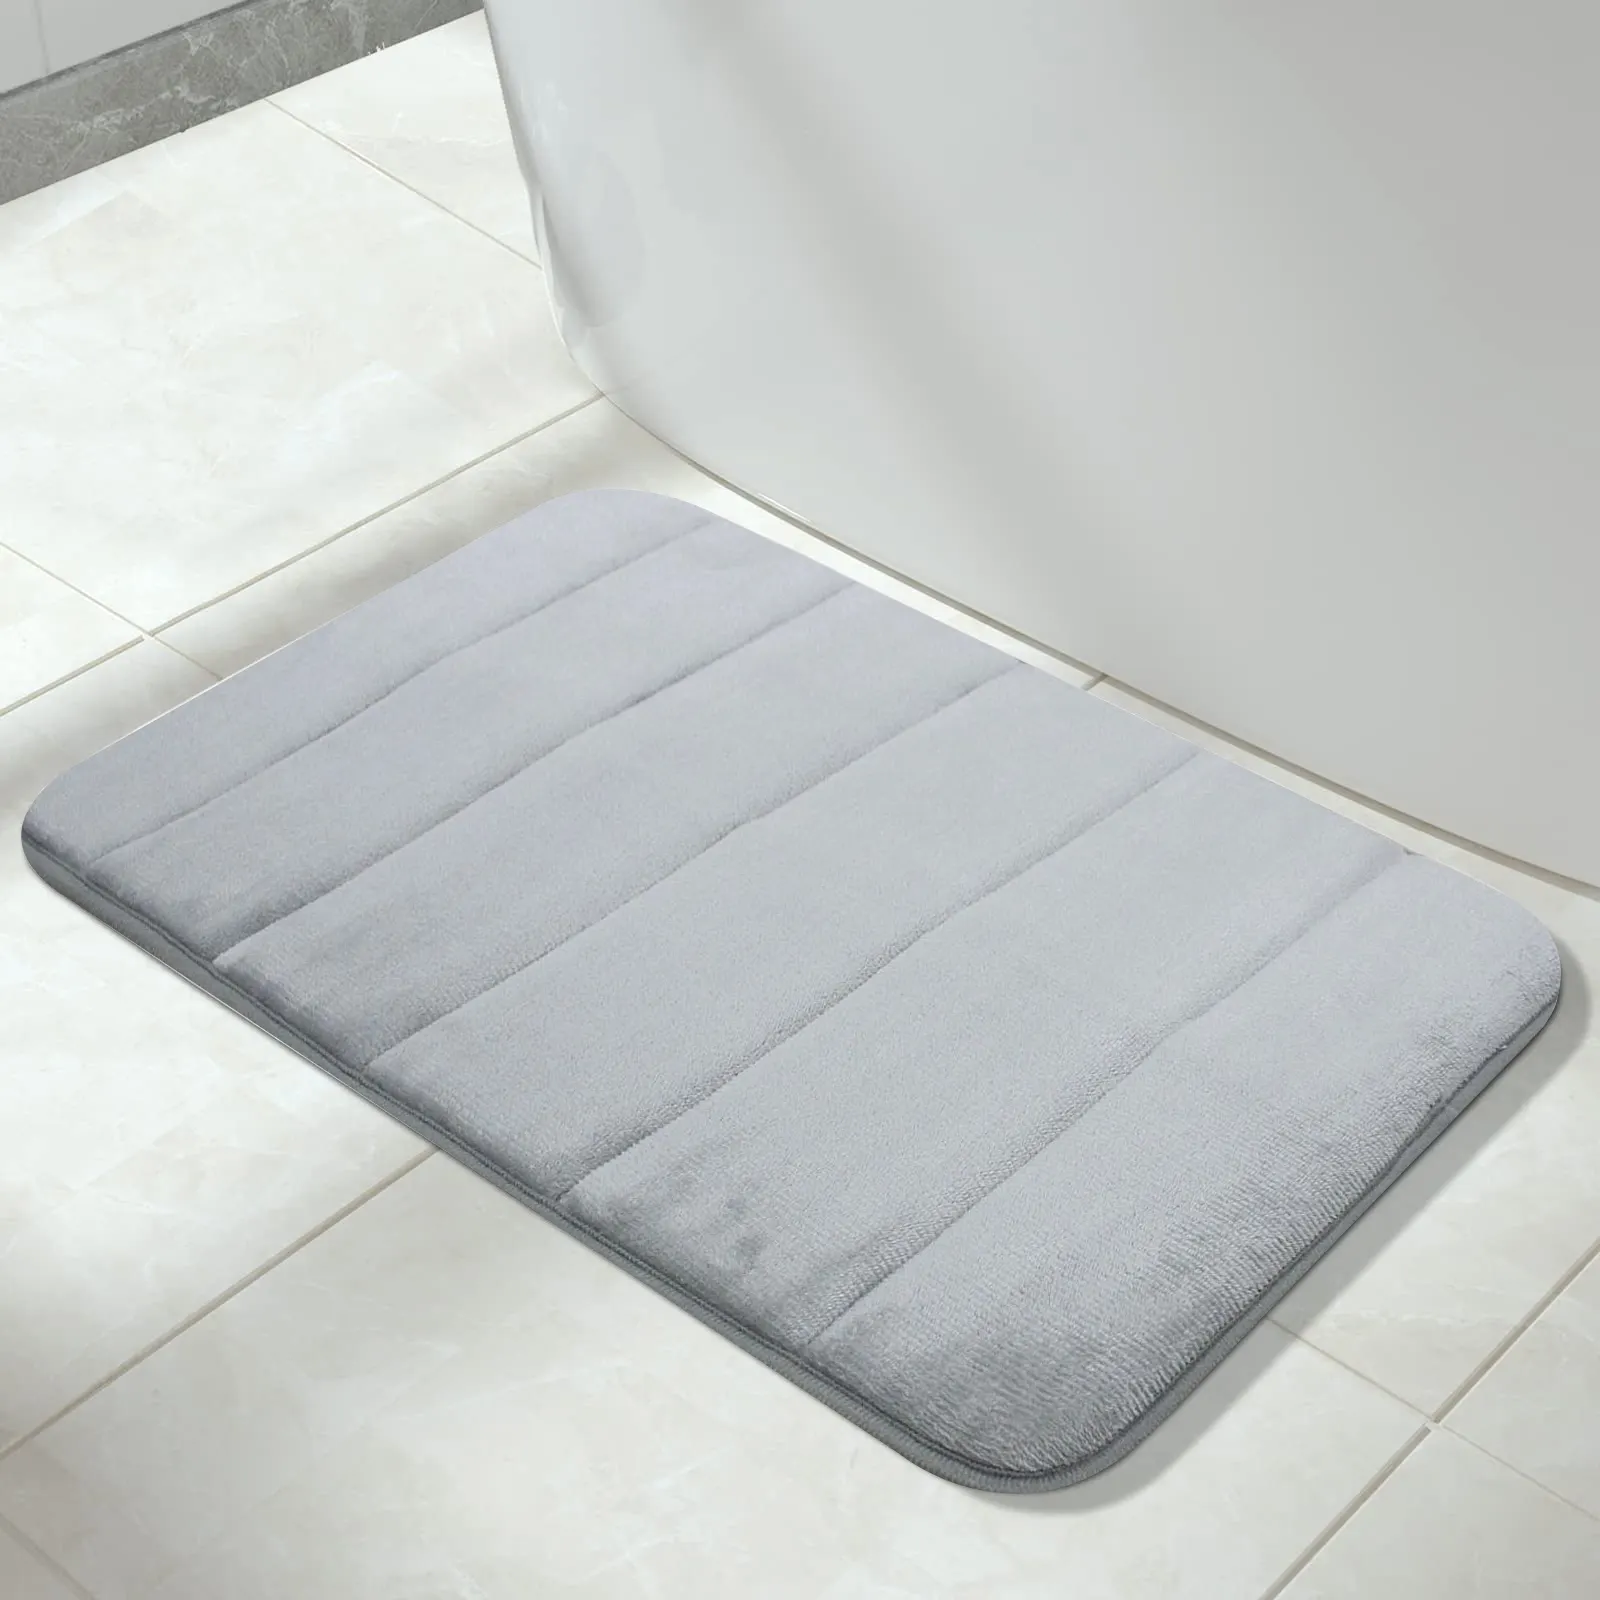 새로운 현대 미끄럼 방지 도어 매트 카트 손쉬운 깨끗한 디자인 친환경 흡수성 및 건조 목욕 매트 욕실 제품